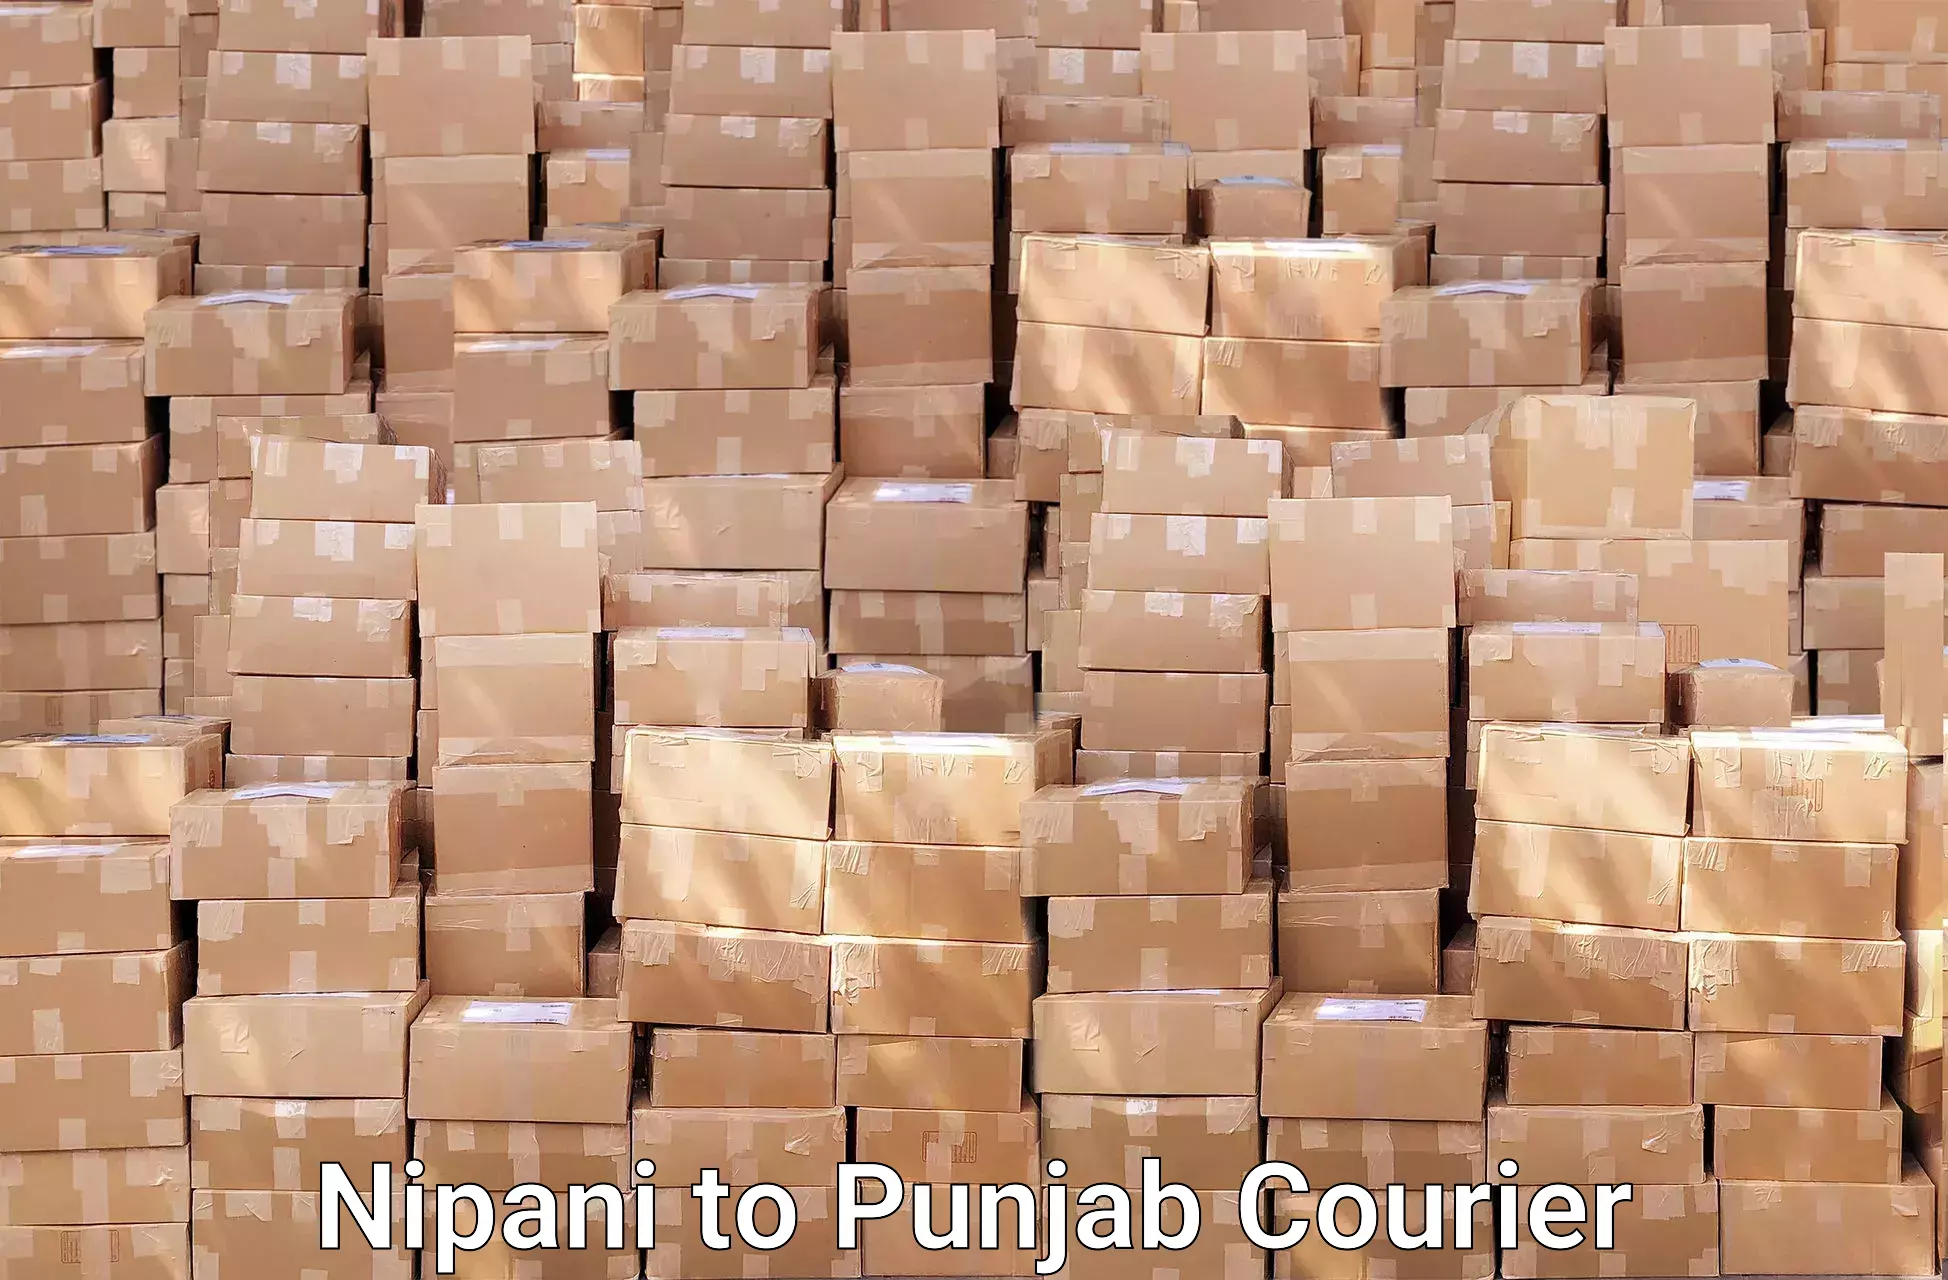 Trusted furniture transport Nipani to Punjab